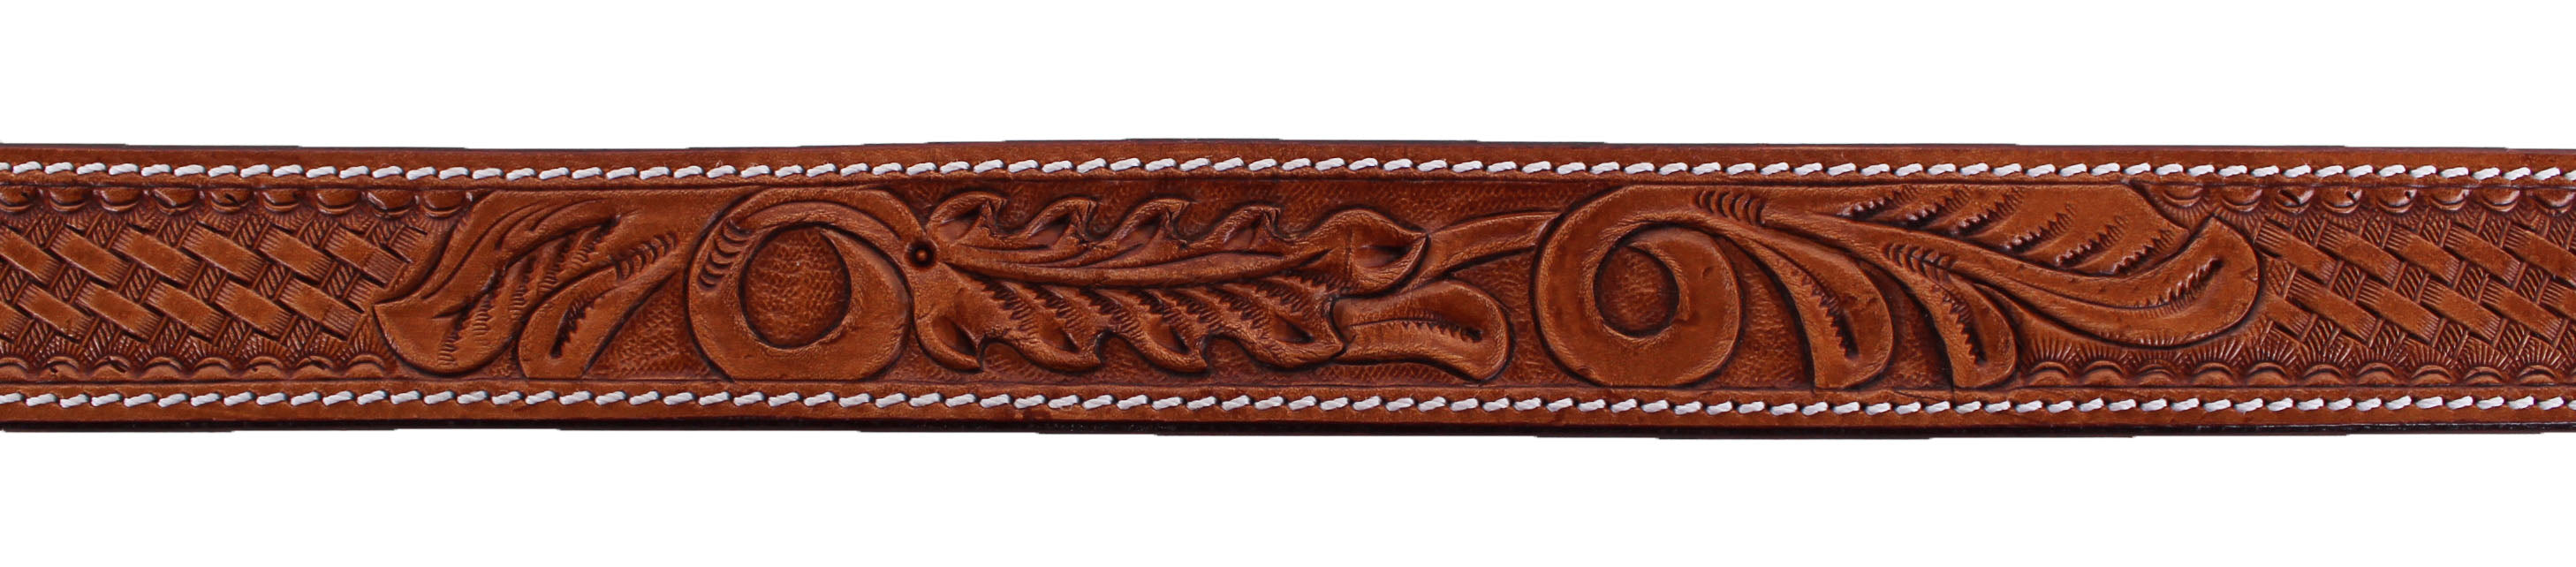 1.5" wide Western Heavy Duty Men Women Genuine Leather Belt Brown 2646RS